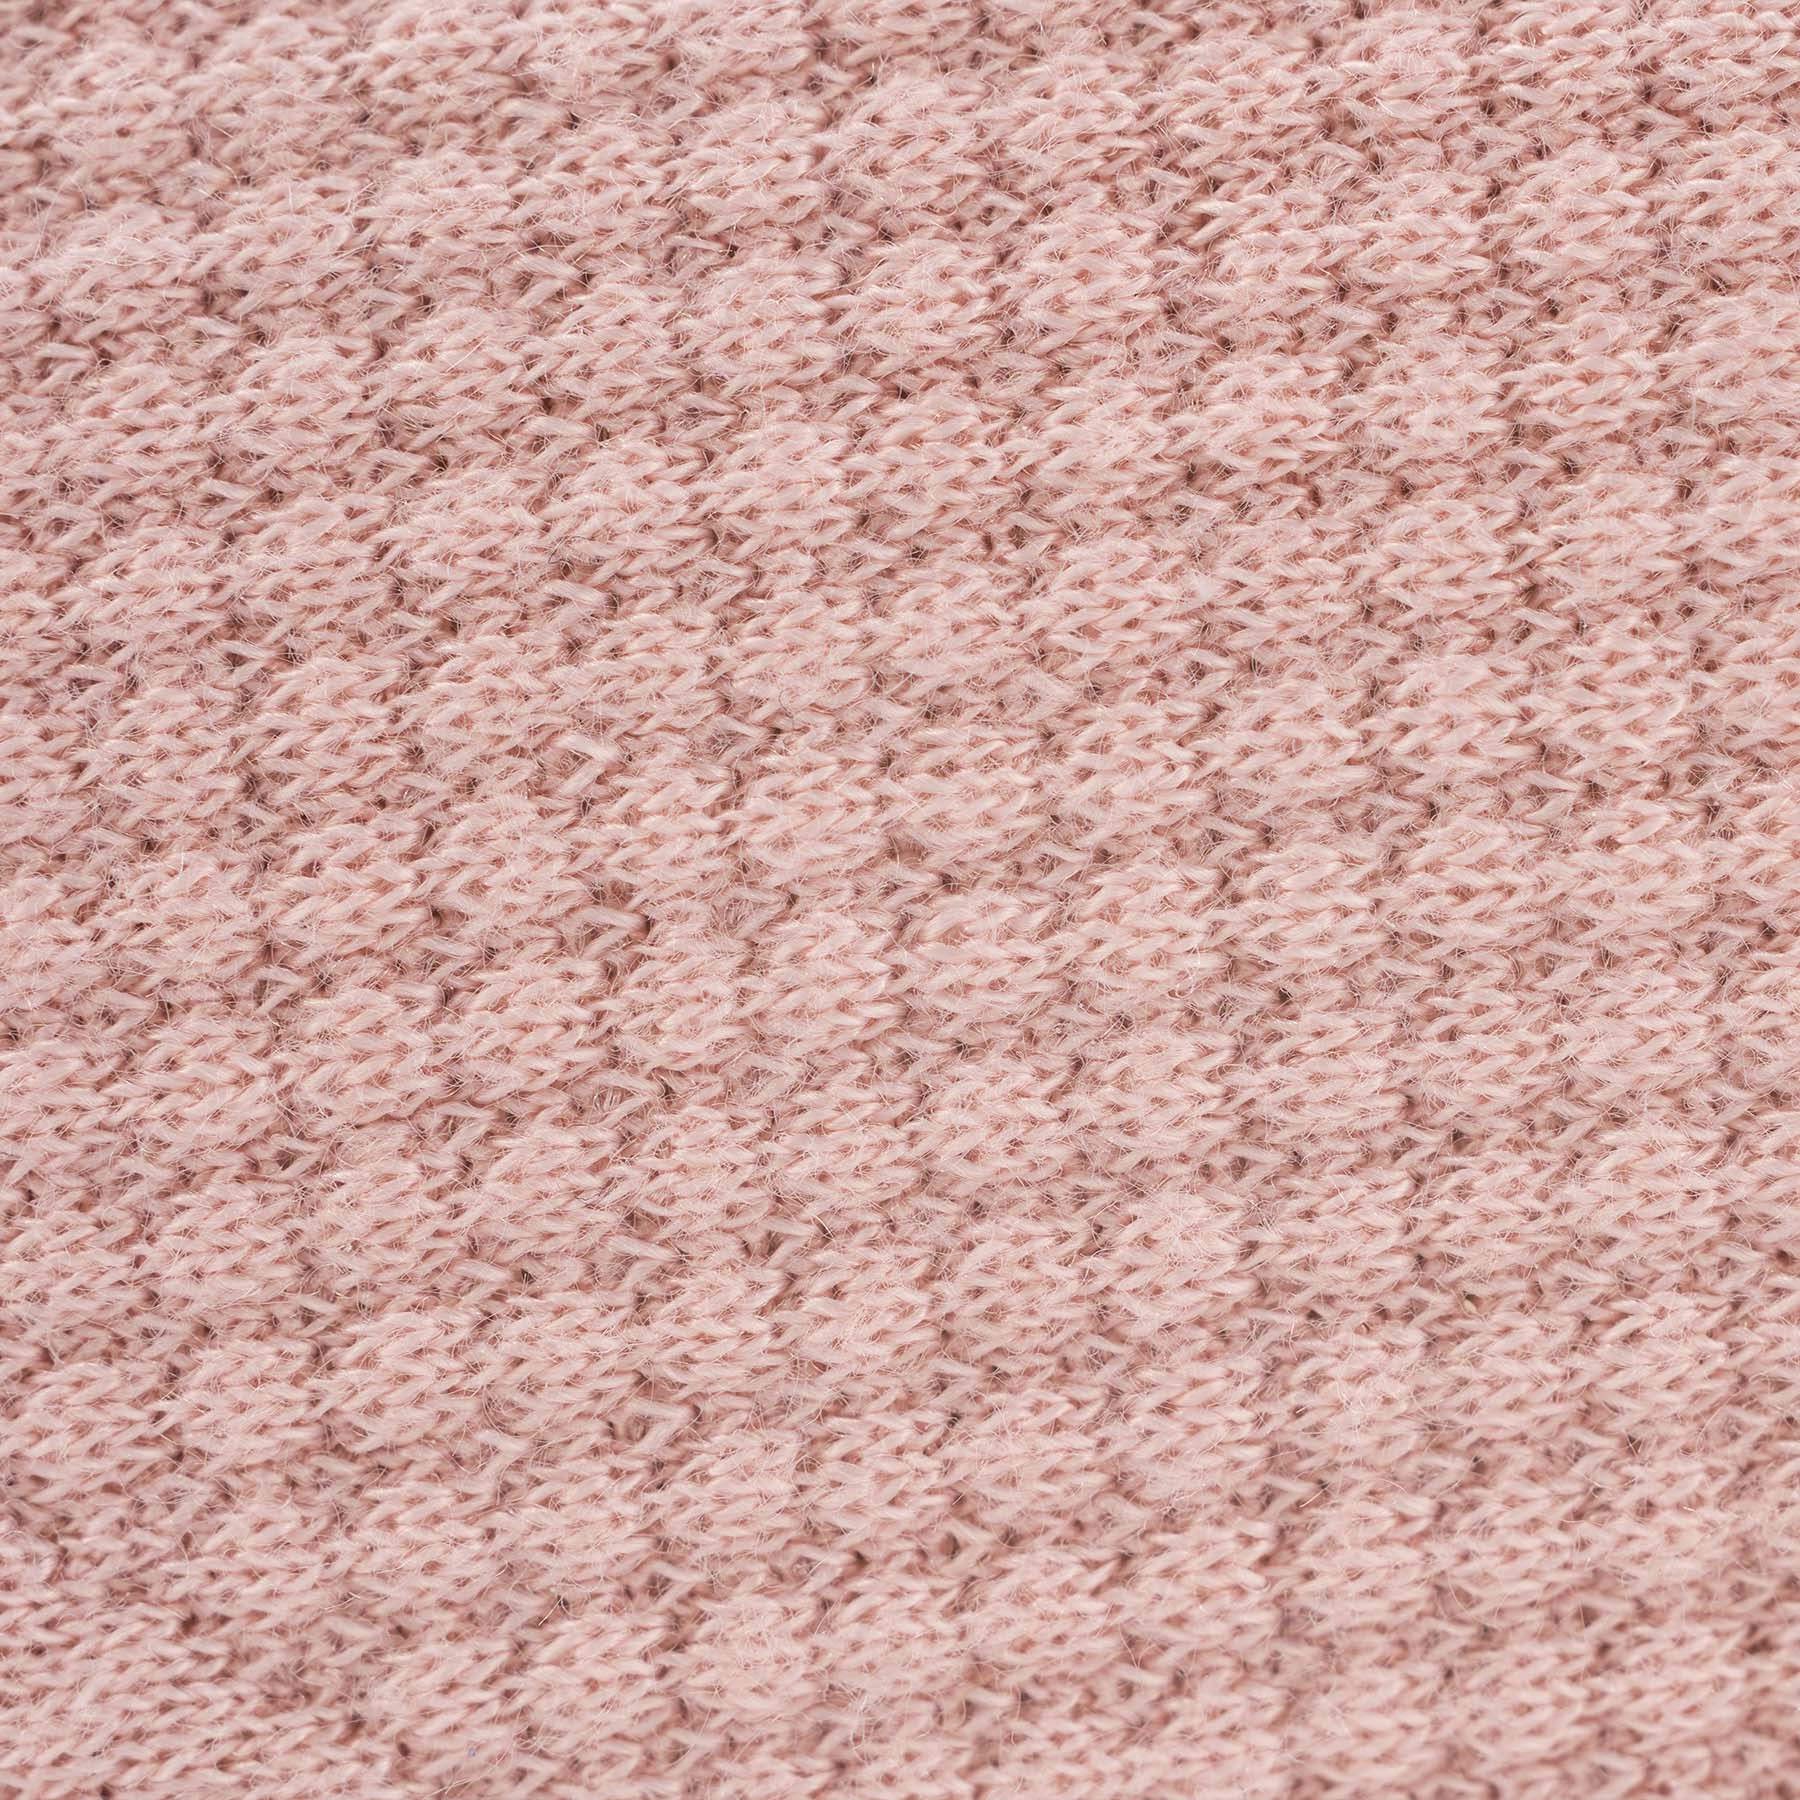 Rose Knit Blanket